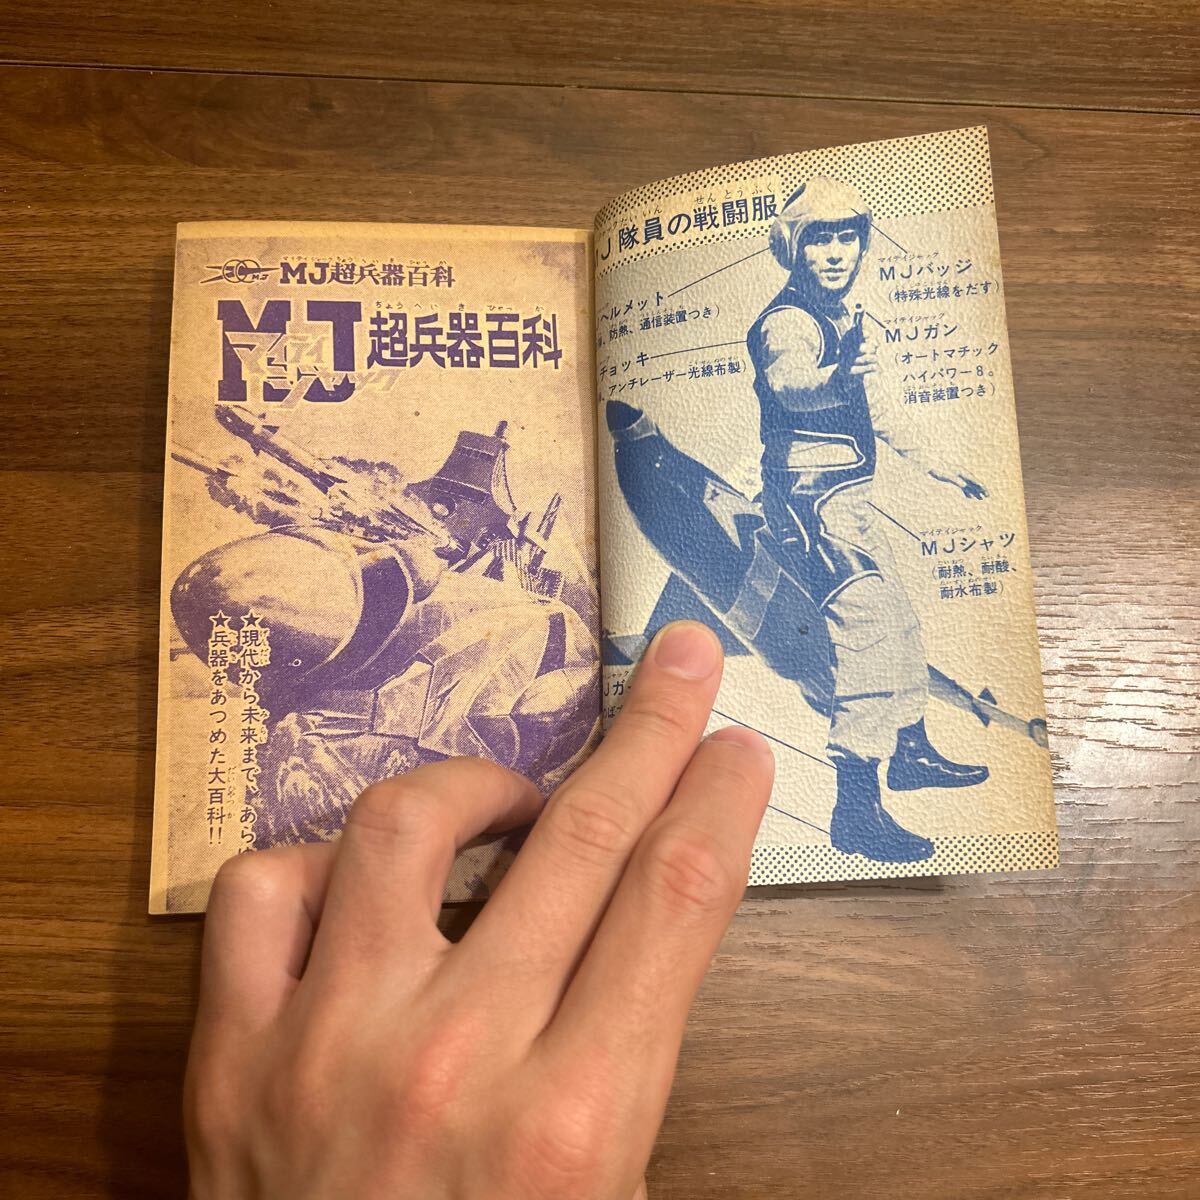  мой Tey Jack супер . контейнер различные предметы Showa Retro манга подросток книжка дополнение подлинная вещь старая книга 